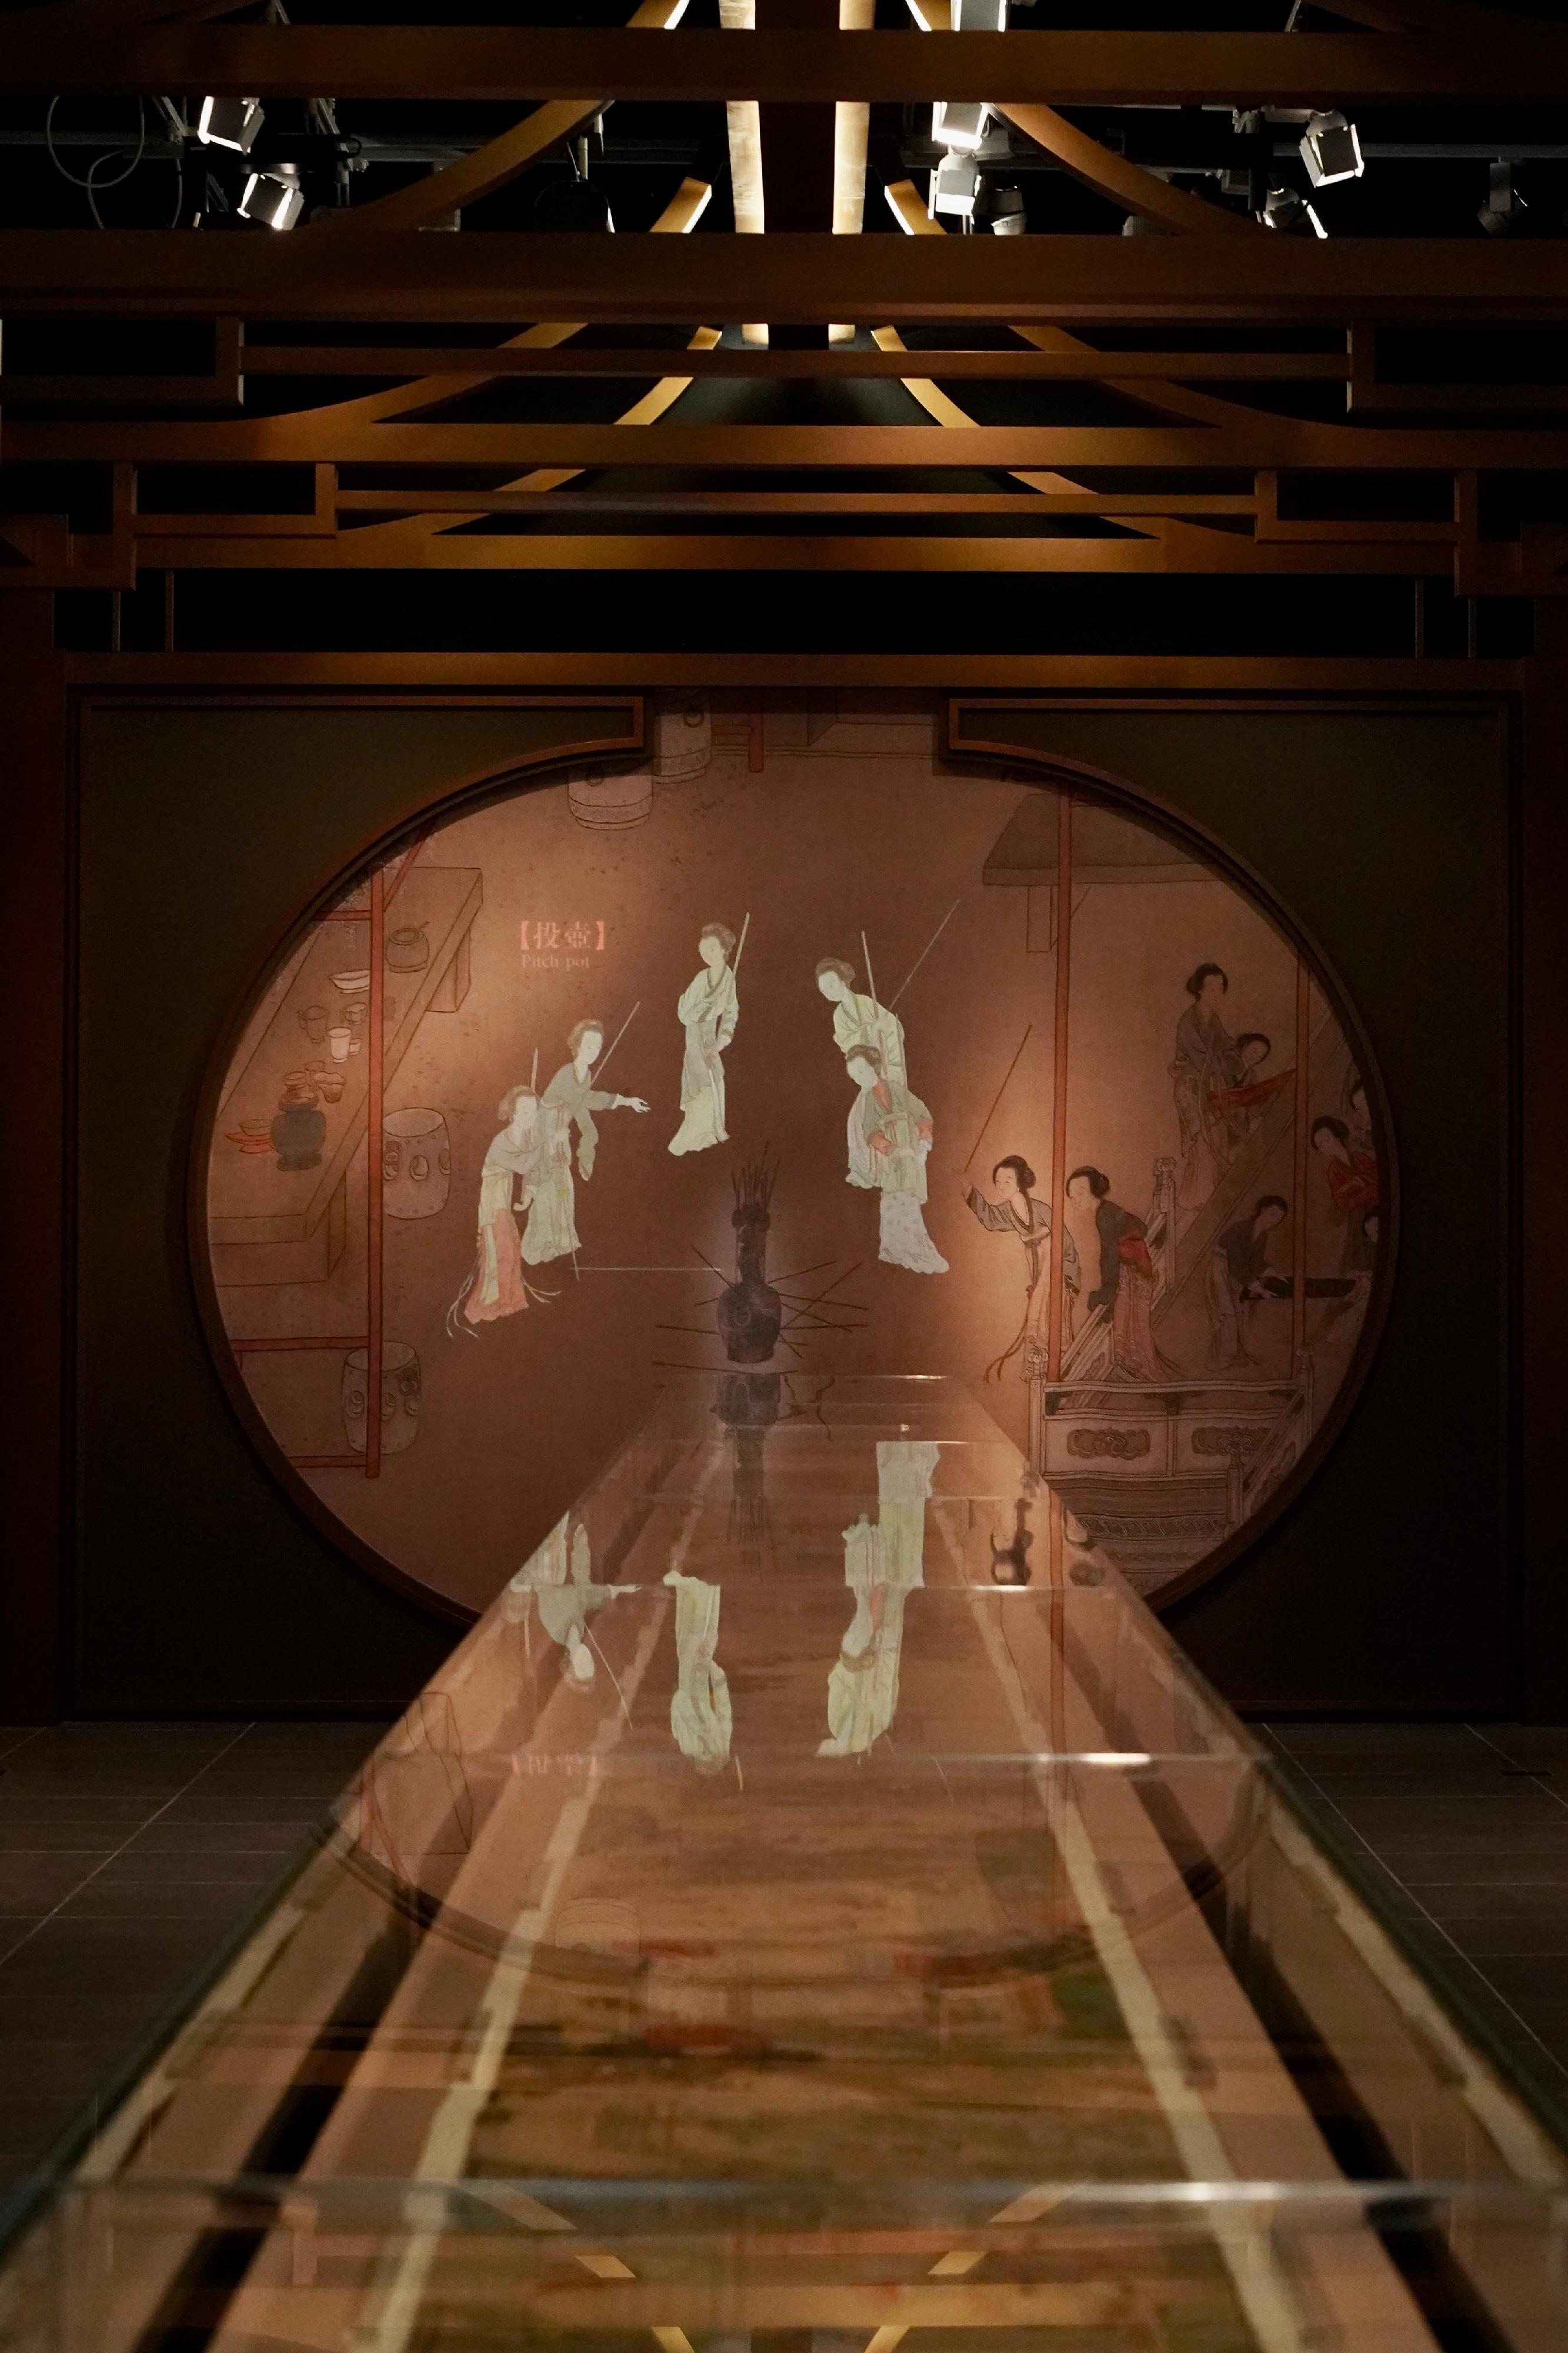 現正於香港文化博物館舉行的「香港賽馬會呈獻系列：眾裡尋她——南京博物院藏中國古代女性文物展」二月二十七日 （星期一）結束，市民請把握機會參觀這個不容錯過的展覽。圖示國家一級文物，描繪古代女士生活的清代手卷《古代仕女行樂圖》。